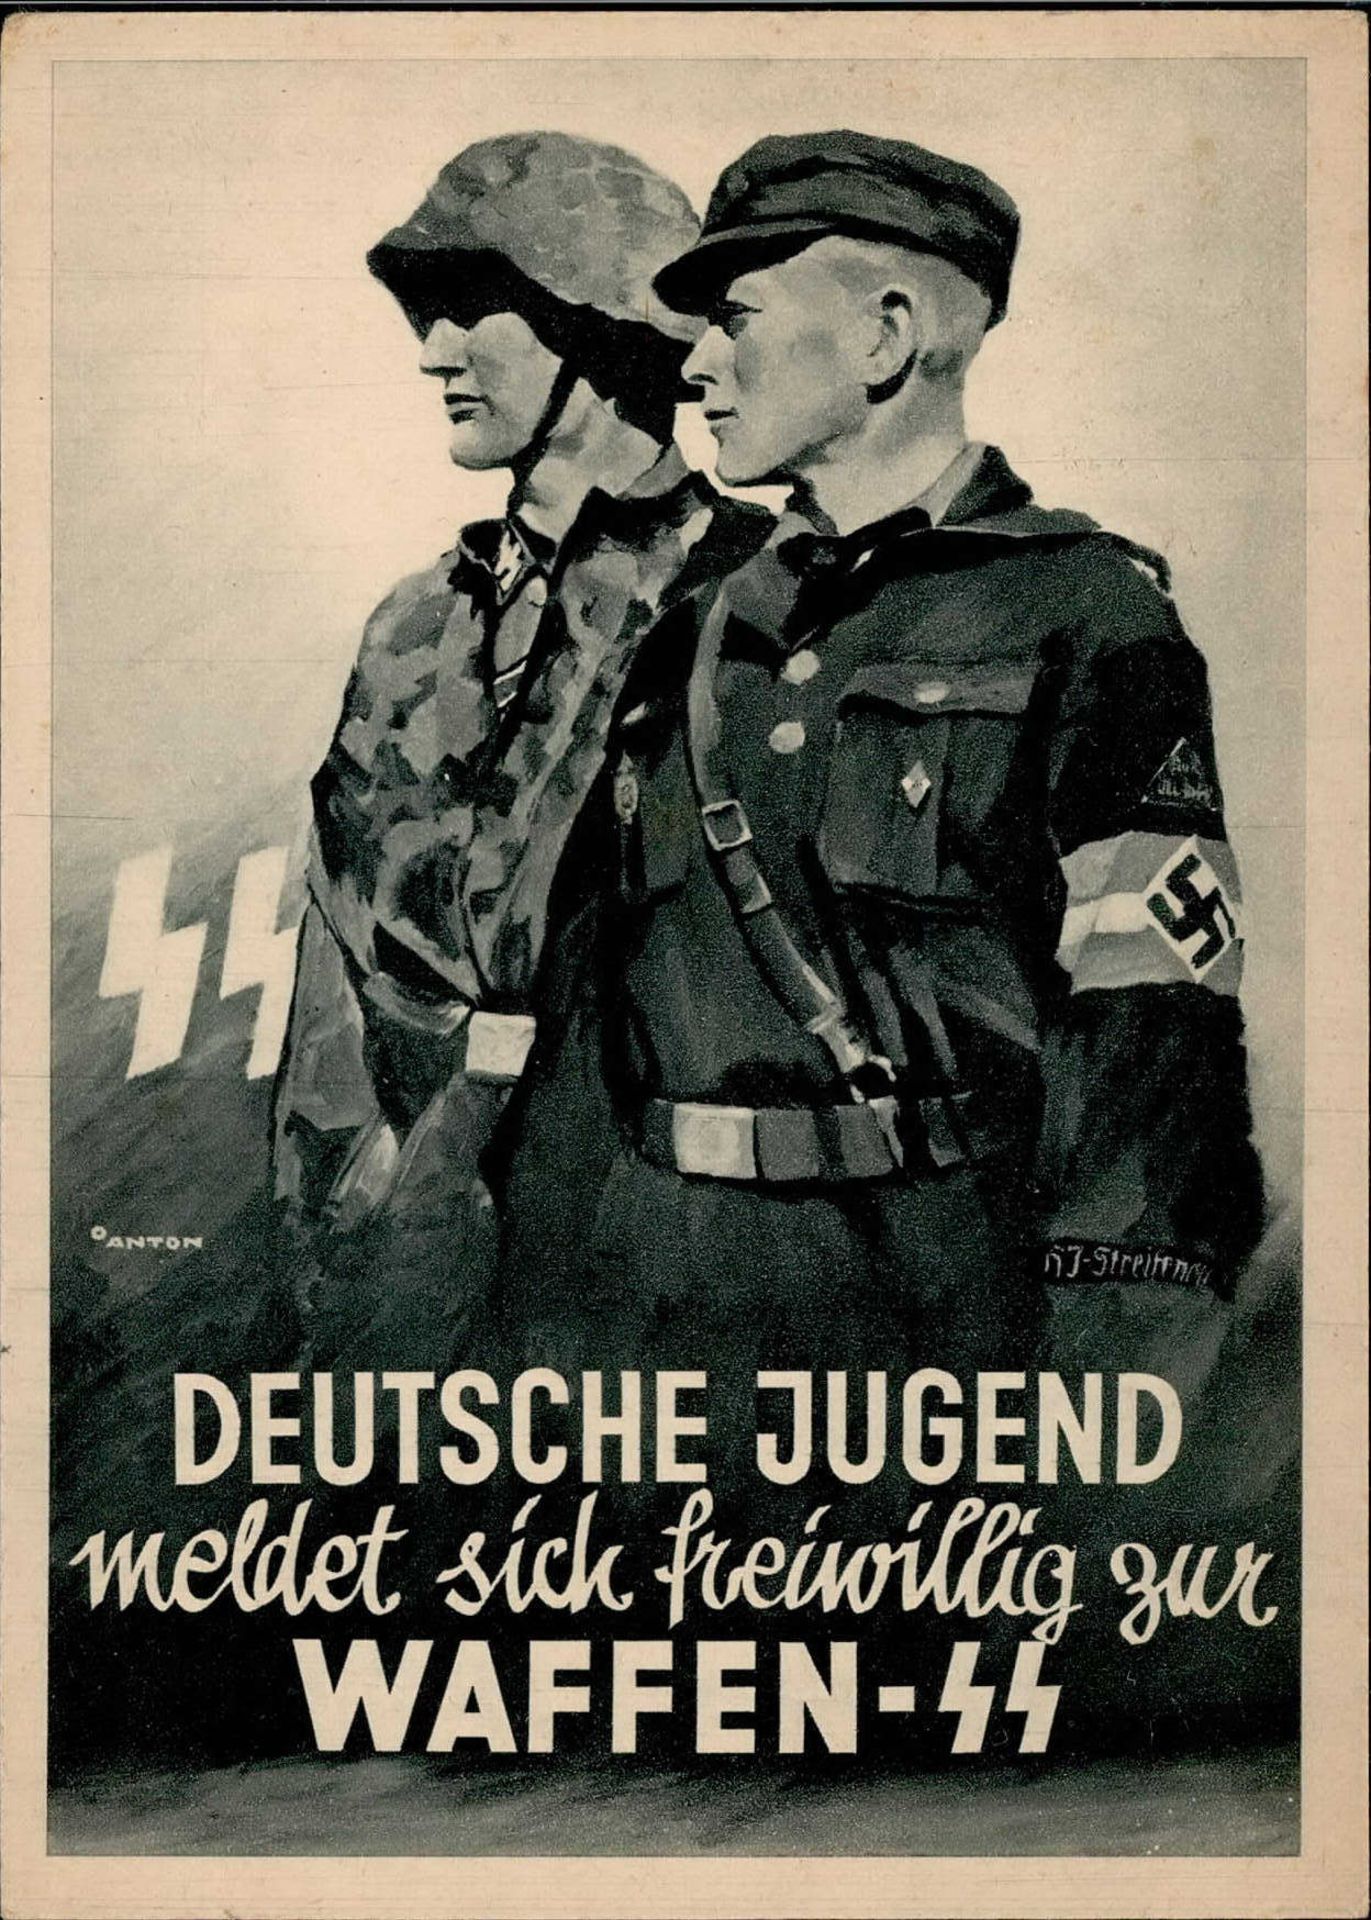 SS Deutsche Jugend meldet sich Freiwillig zur Waffen SS I-II R!